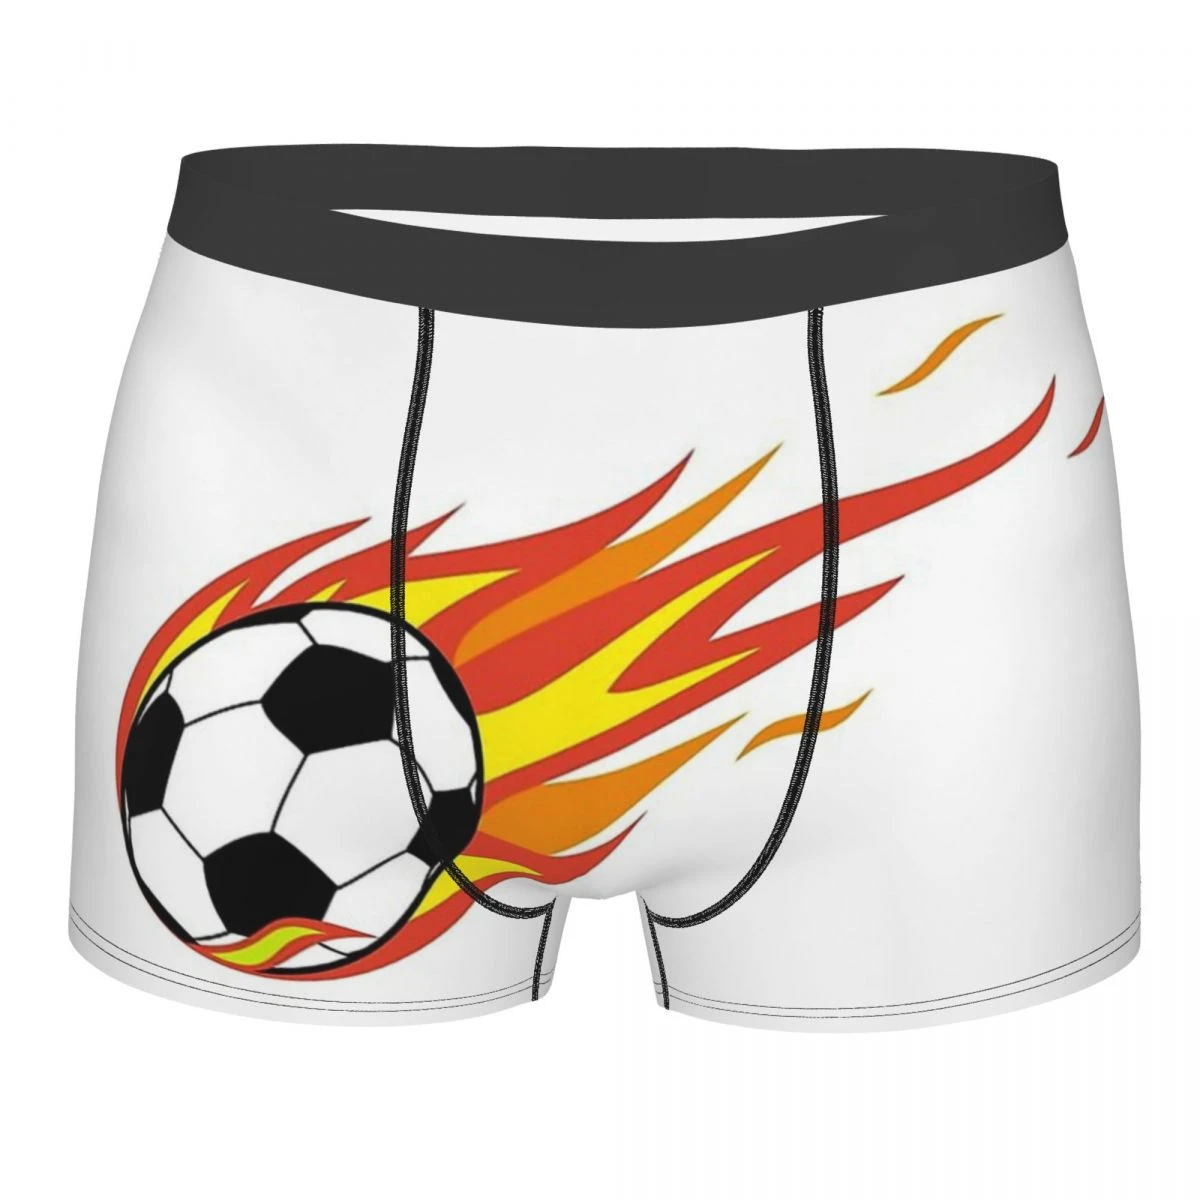 Voetbal Sport Fire Voetbal Onderbroek Homme Slipje Mannelijke Ondergoed  Print Paar Sexy Set Calecon| | - AliExpress